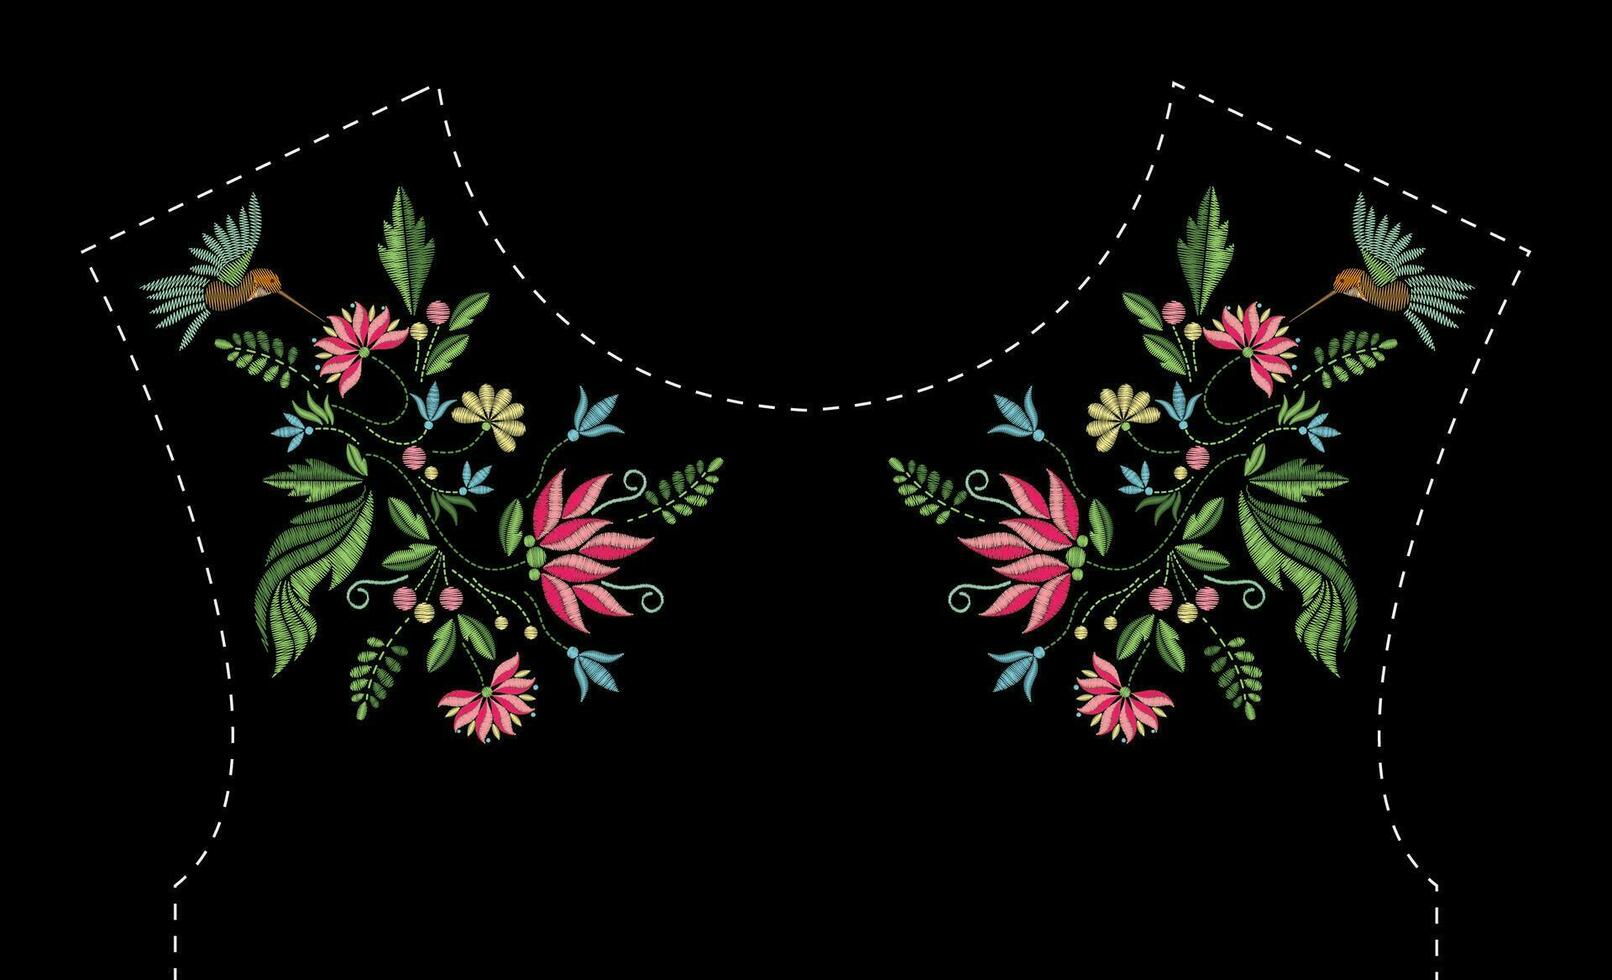 Satin- Stich Stickerei Design mit Blumen und Vögel. Volk Linie Blumen- modisch Muster zum Kleid Ausschnitt. ethnisch Mode Ornament zum Hals auf schwarz Hintergrund. vektor